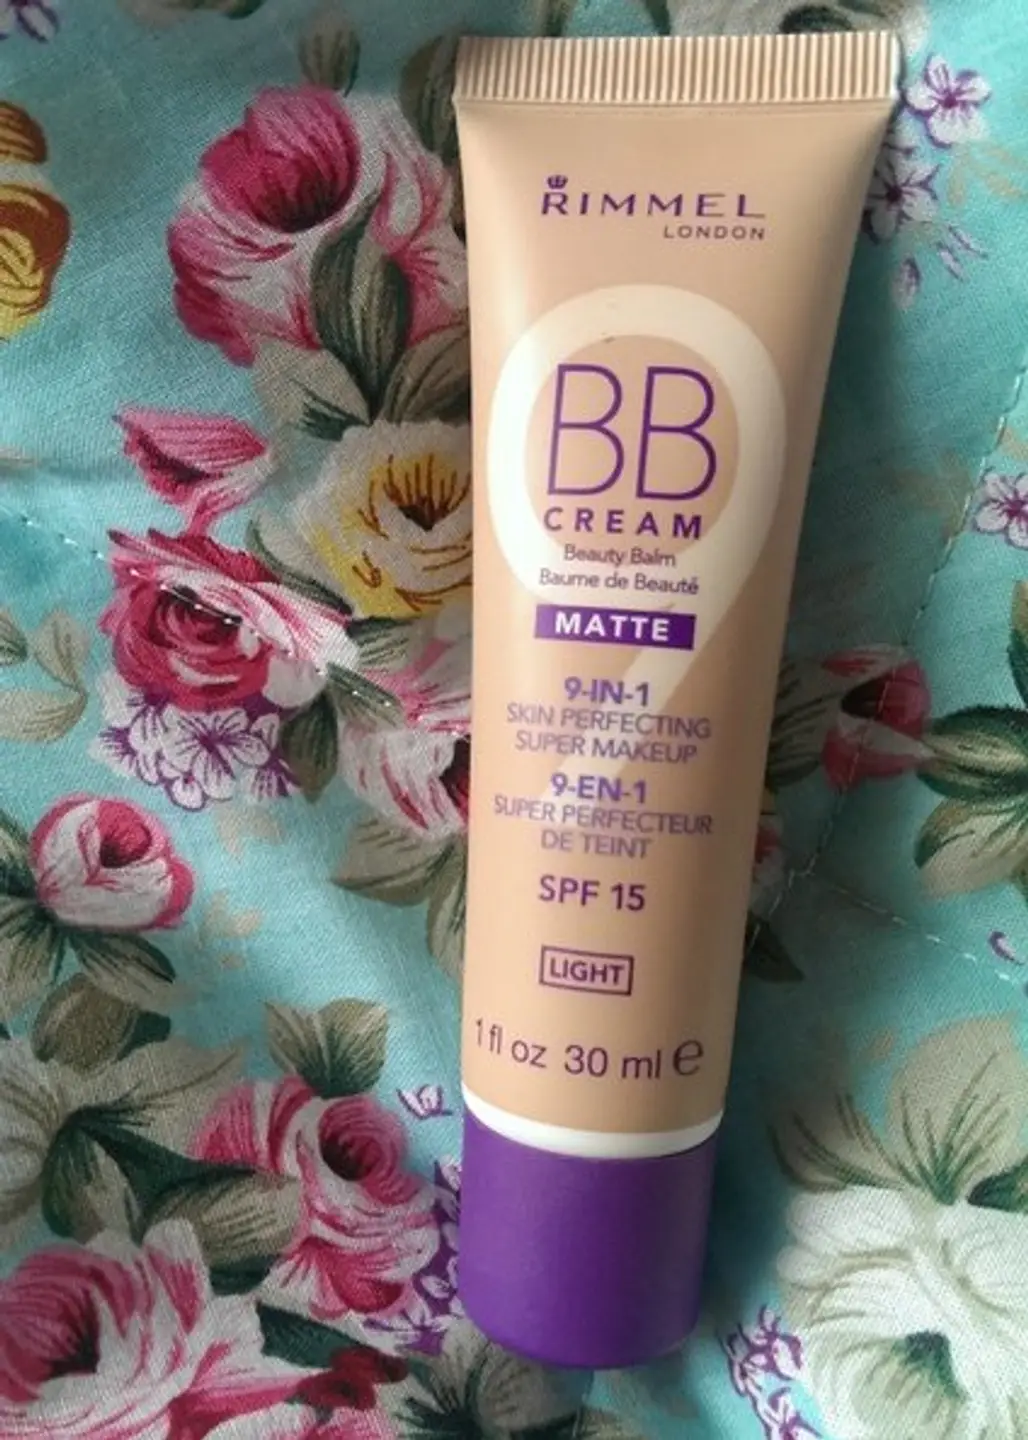 BB Cream as Makeup